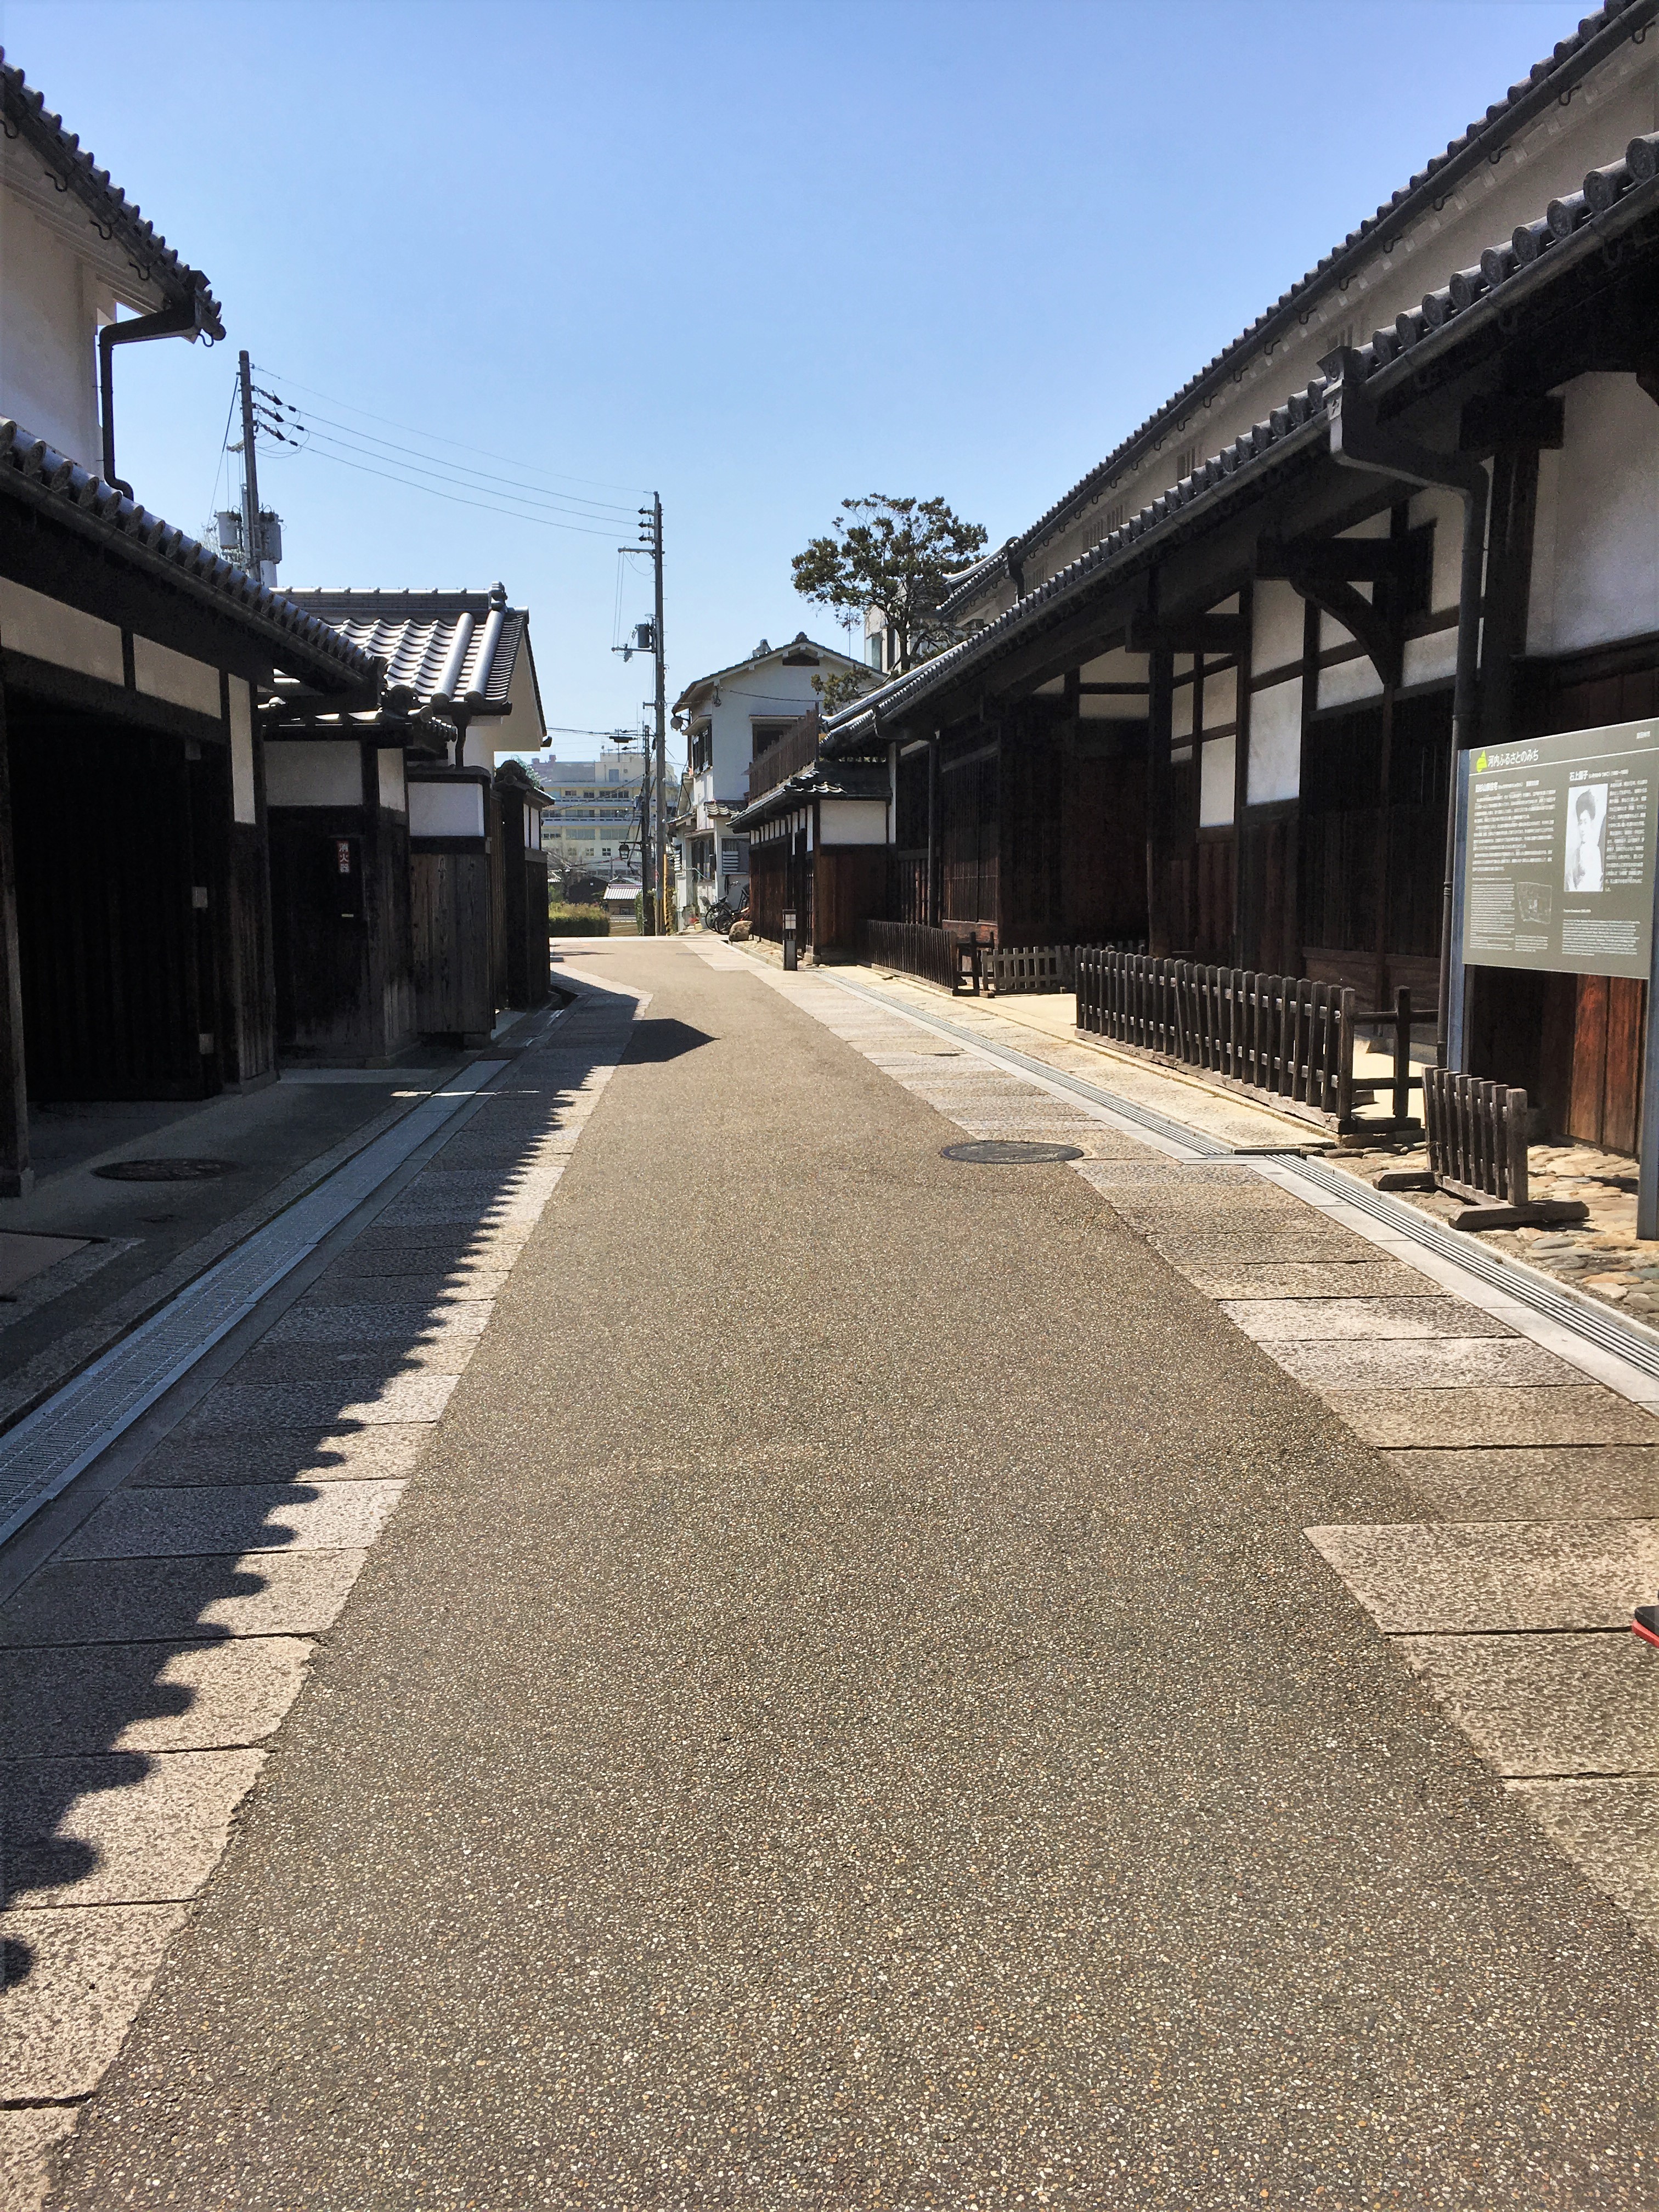 Street with old fashioned Japanese houses in Tondayabashi, Japan